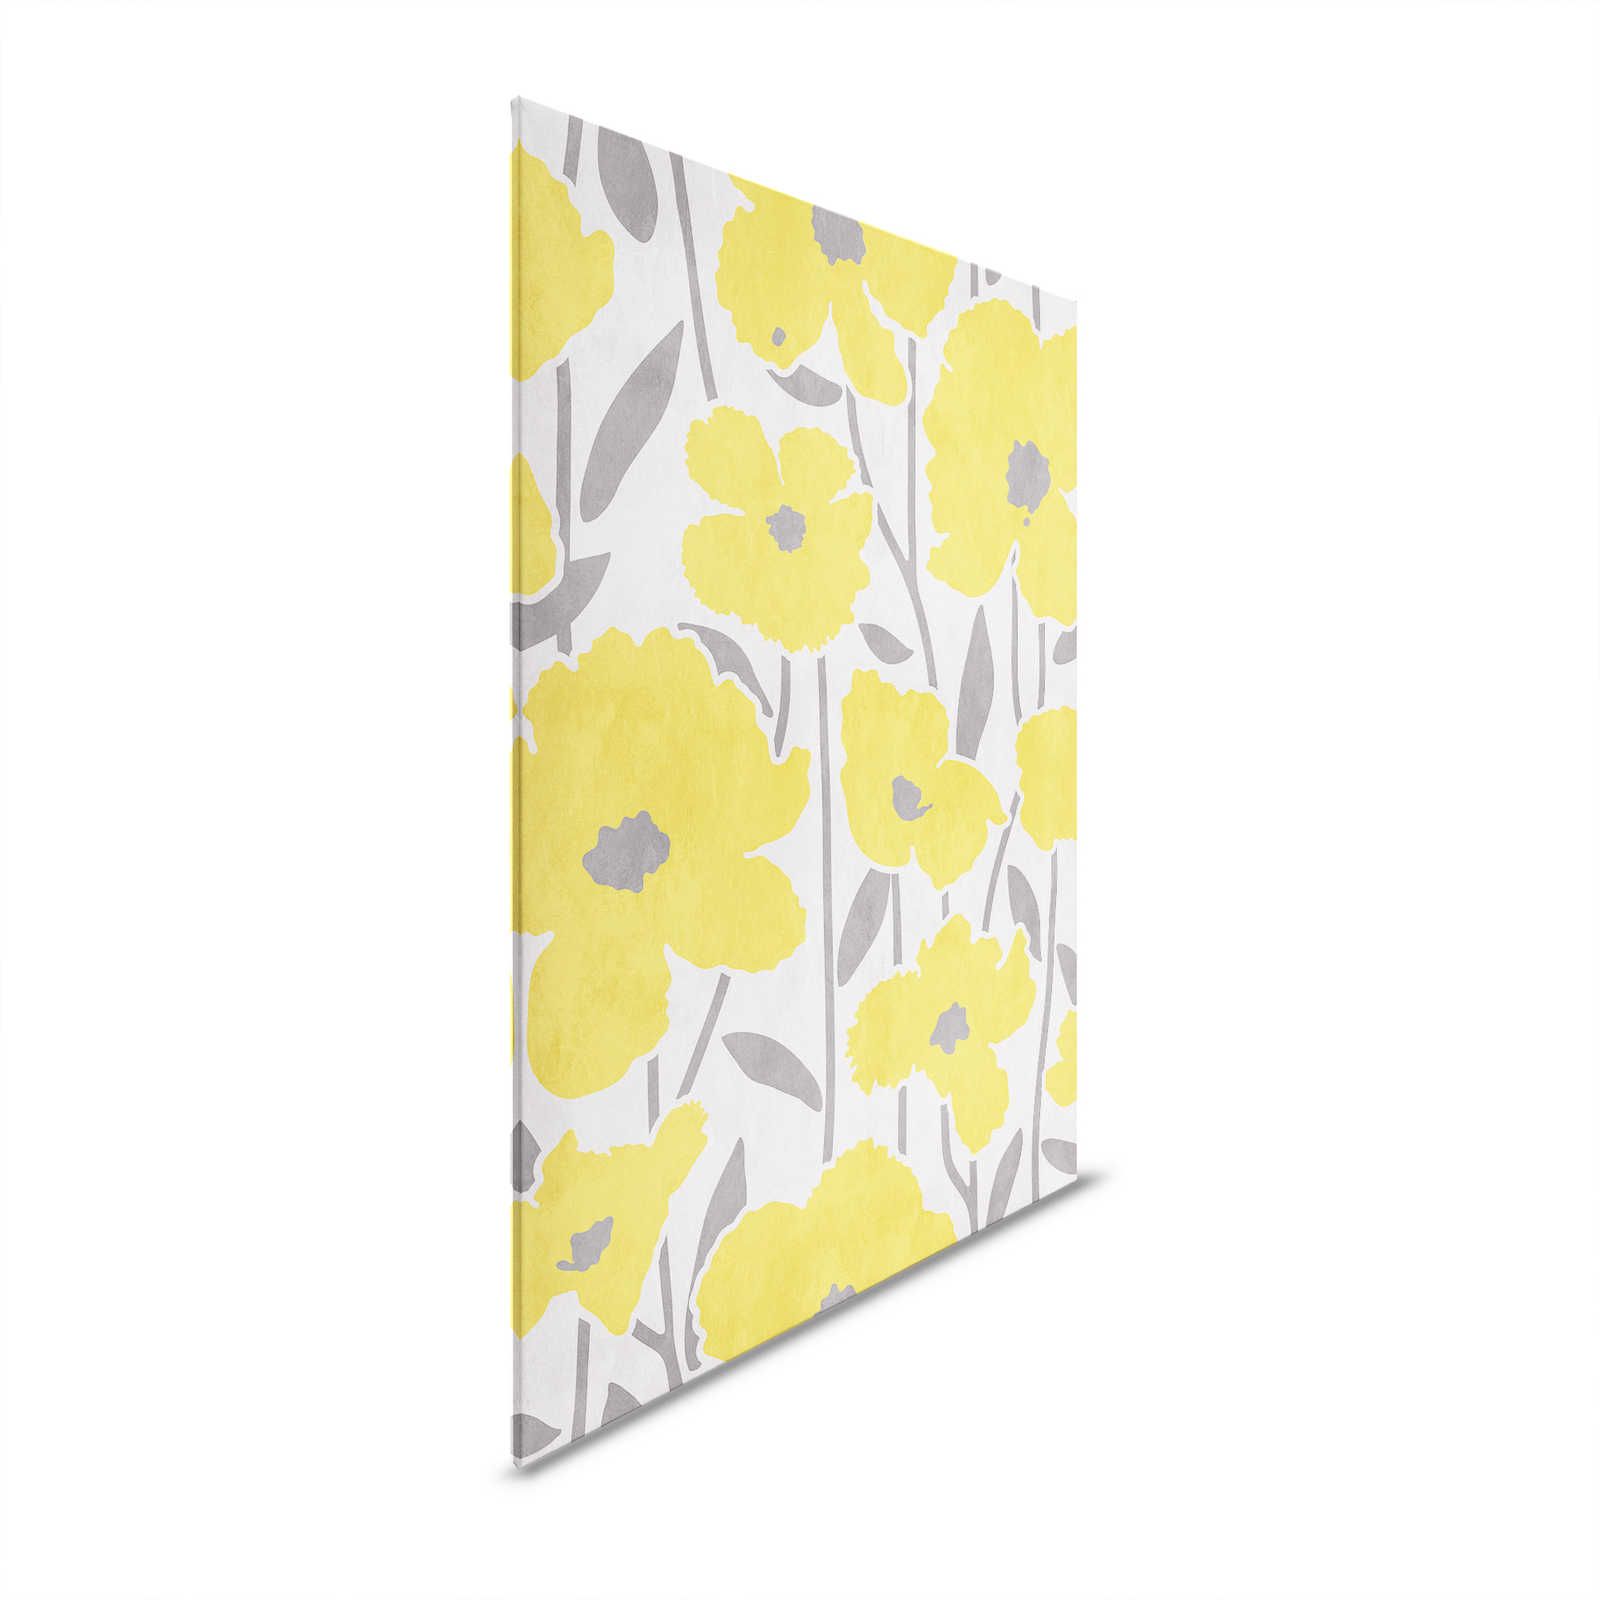 Mercato dei fiori 4 - Pittura su tela floreale gialla e grigia con effetto renderizzato - 0,60 m x 0,80 m
